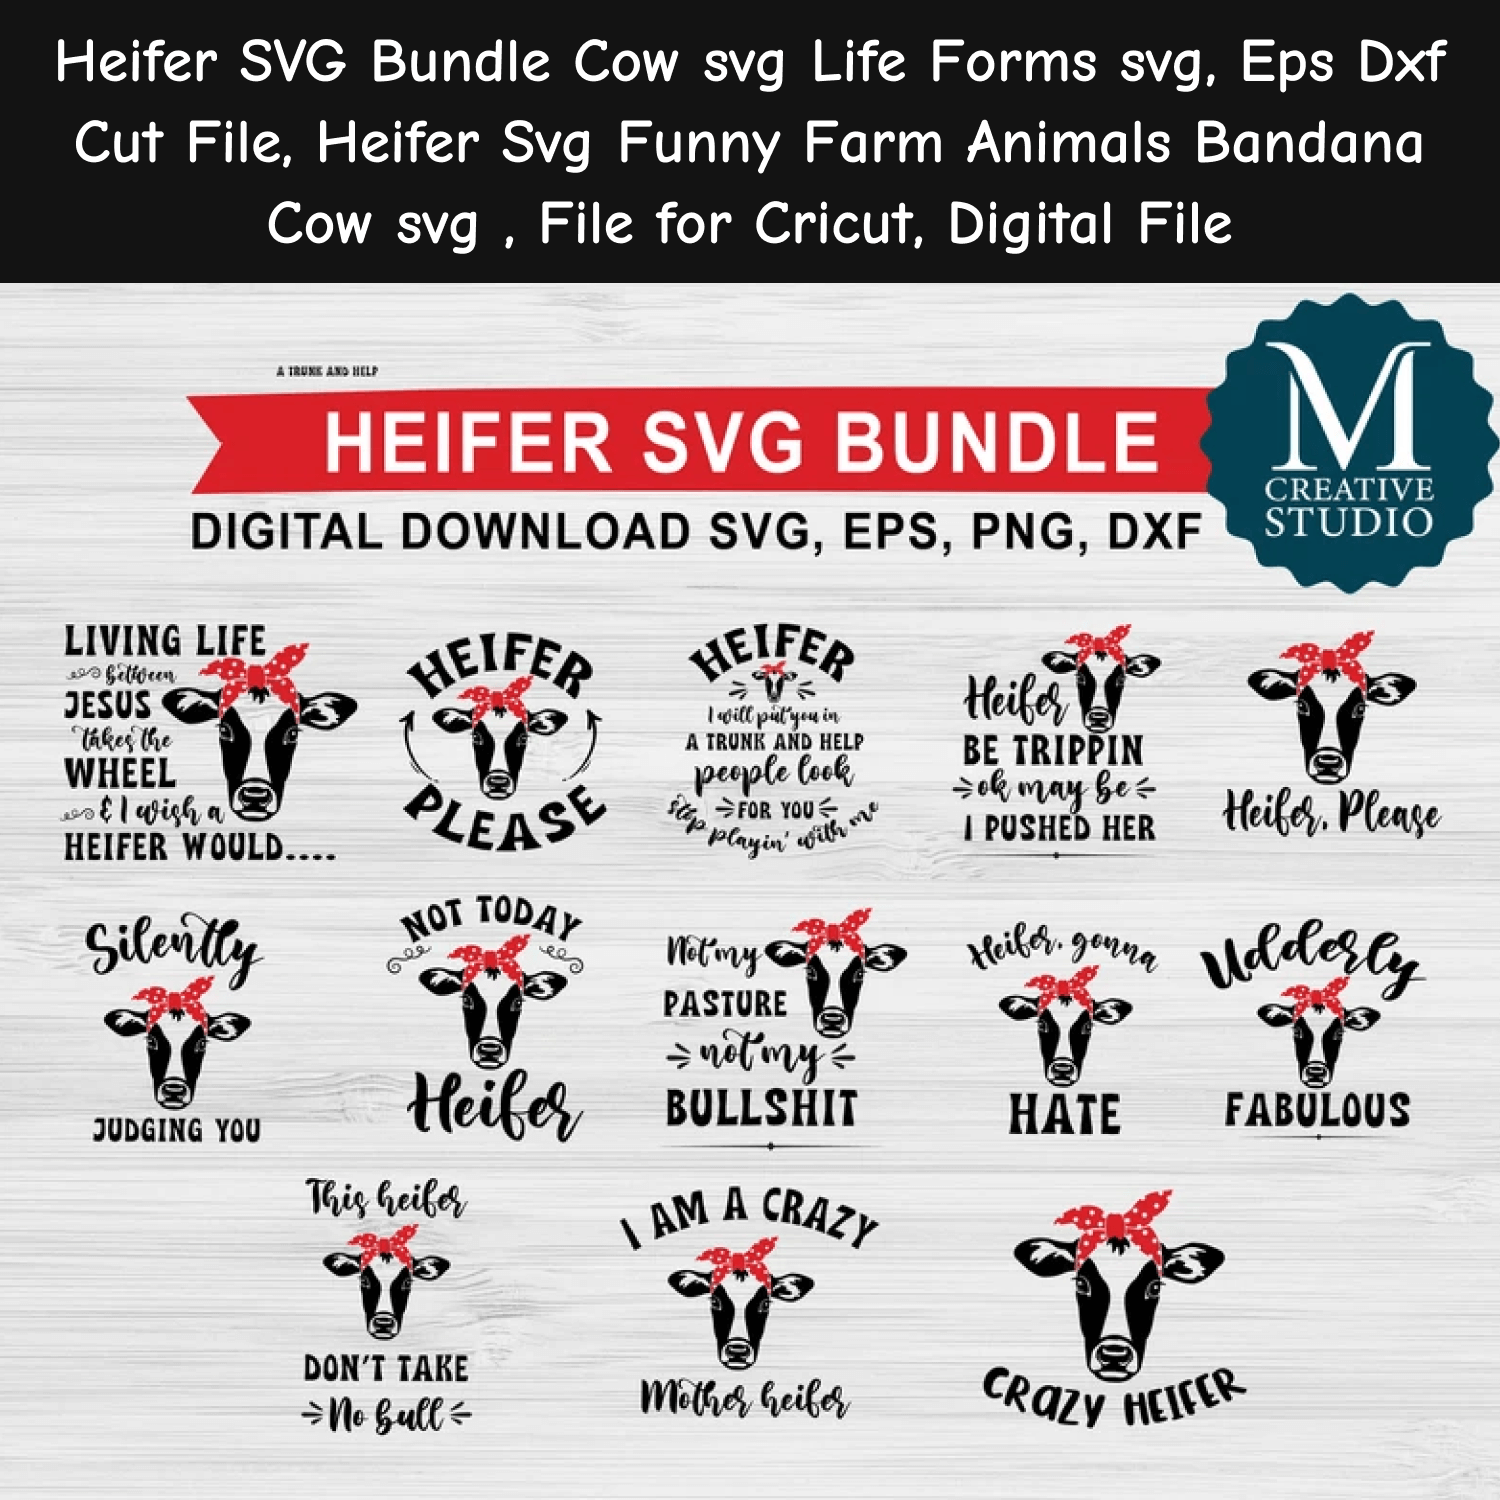 The heifer svg bundle includes the heifer svg bundle and the he.